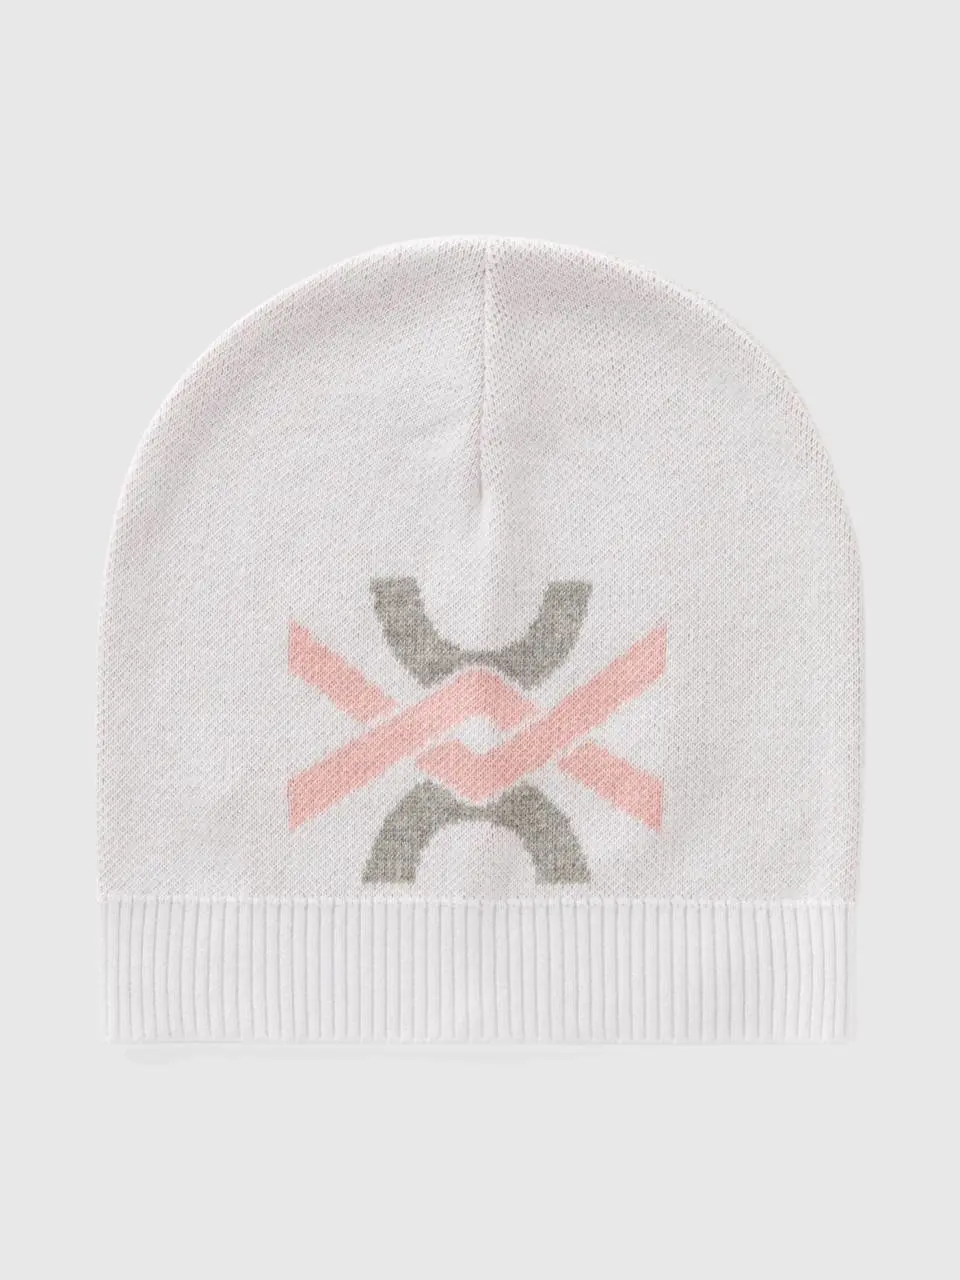 Benetton 100% cotton cap with logo. 1